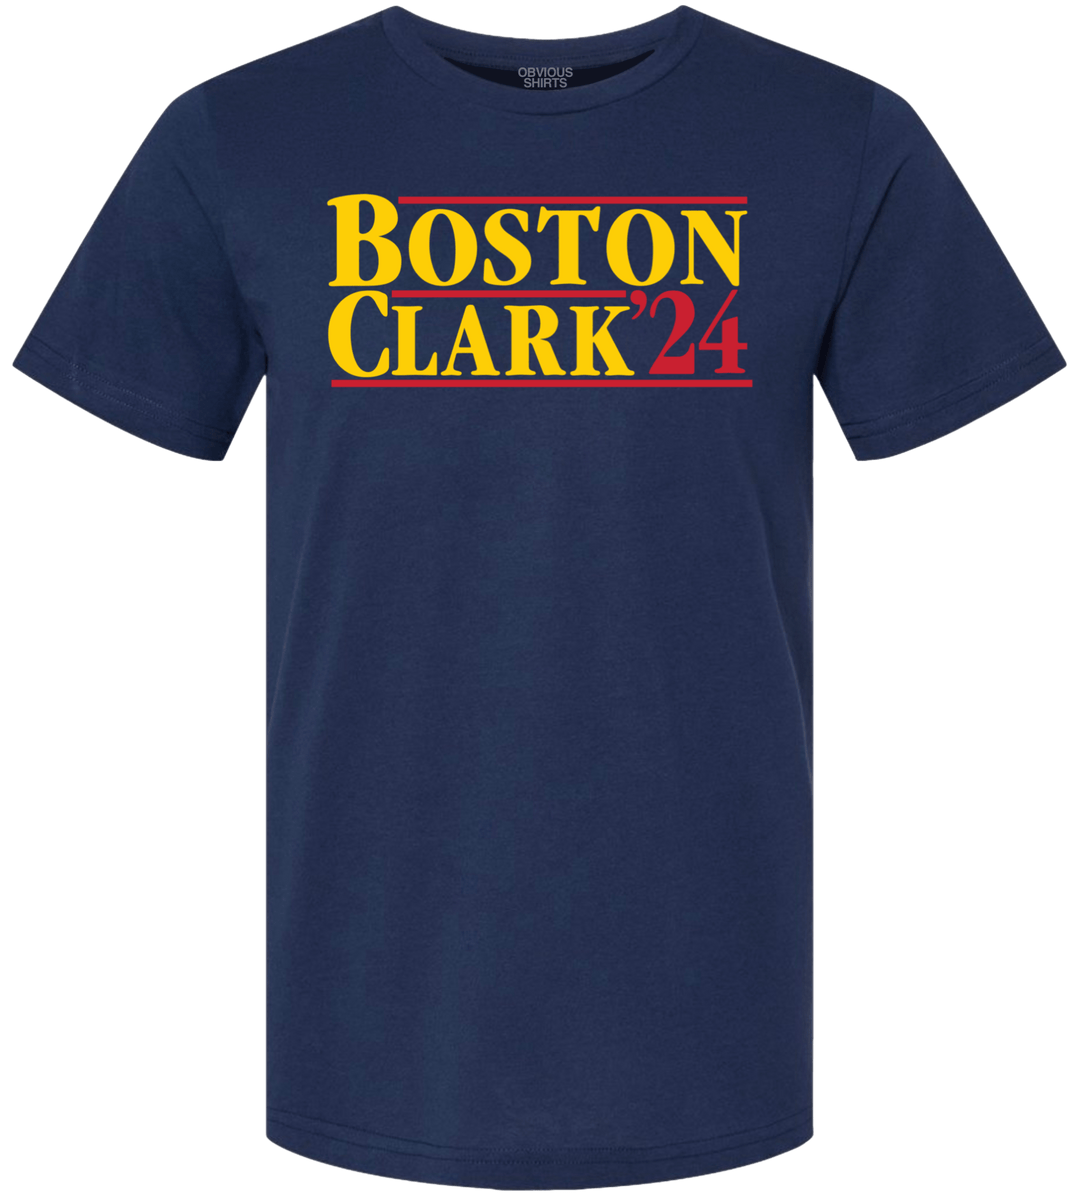 BOSTON CLARK 2024. - OBVIOUS SHIRTS